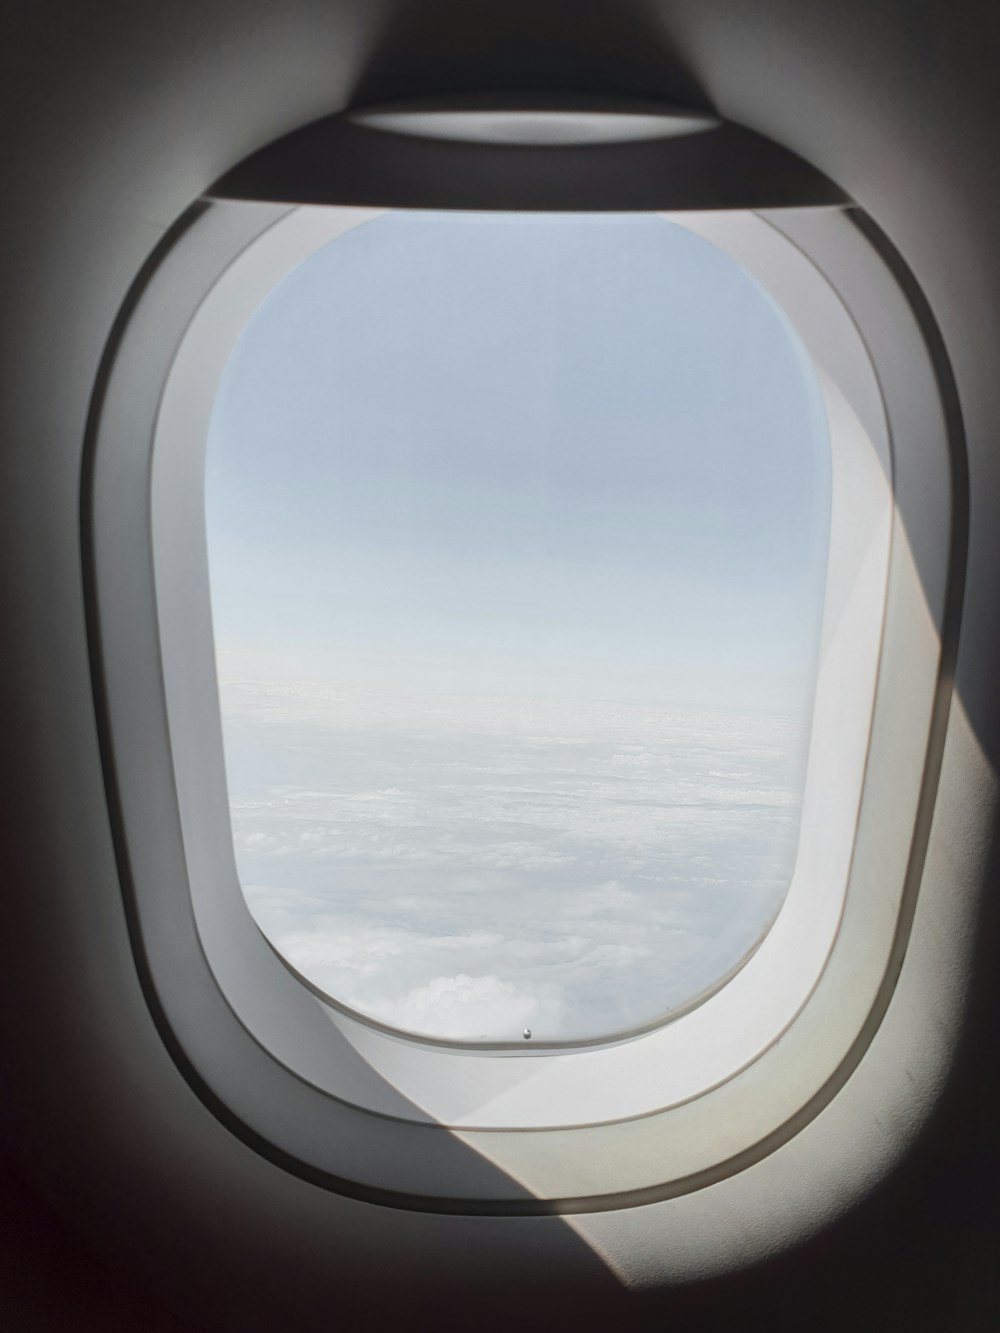 Шторки иллюминаторов. Иллюминатор самолета. Вид из иллюминатора космического корабля. Вид из окна самолета. Самолет с квадратными иллюминаторами.